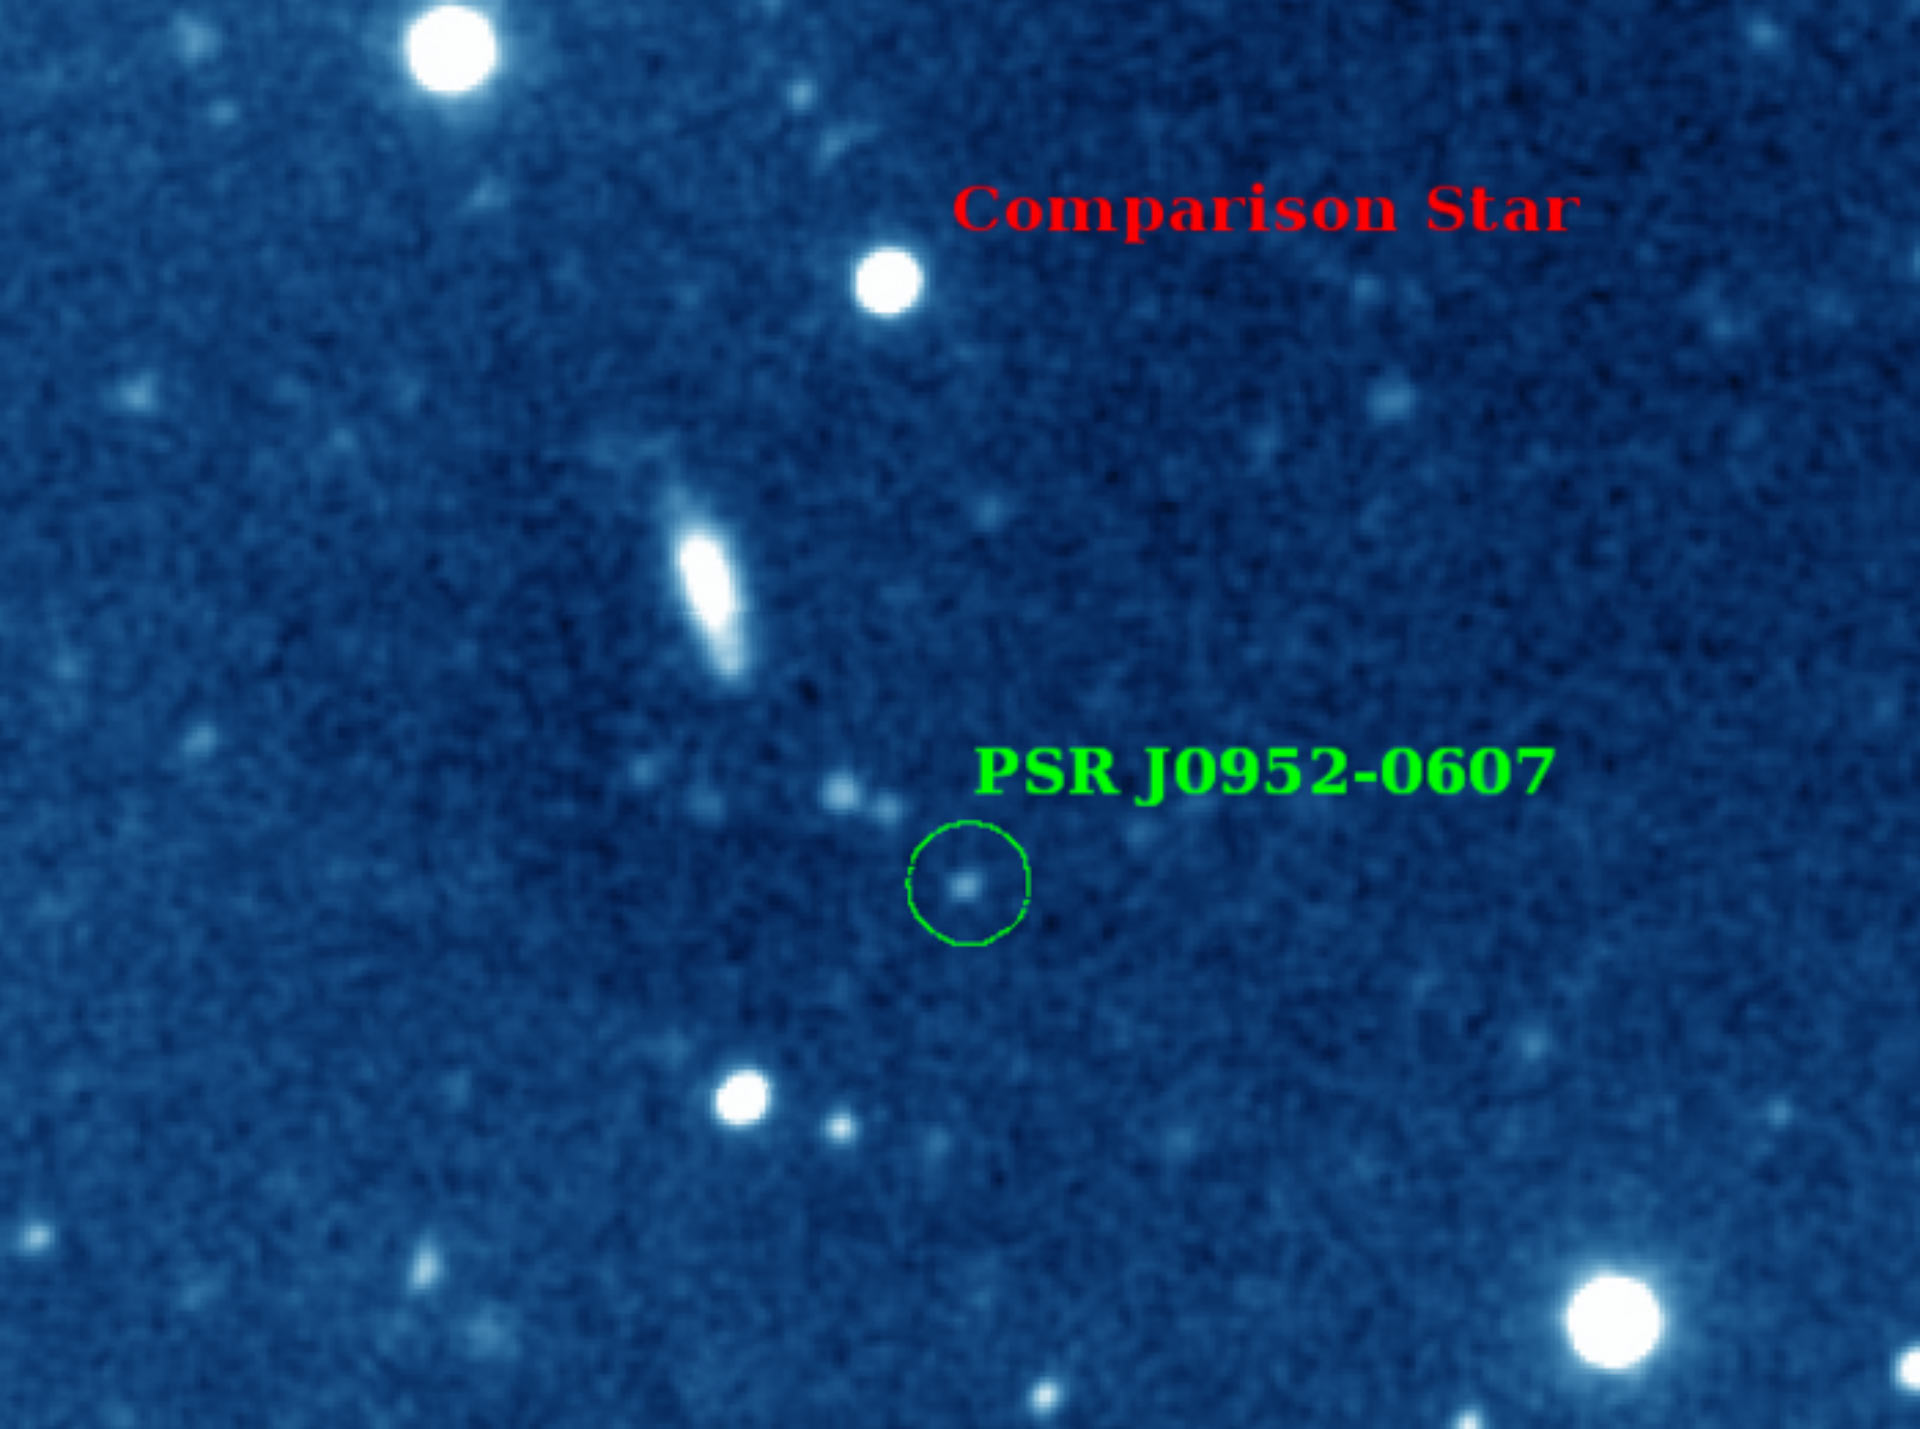 нейтронная звезда PSR J0952-0607 и ее компаньон